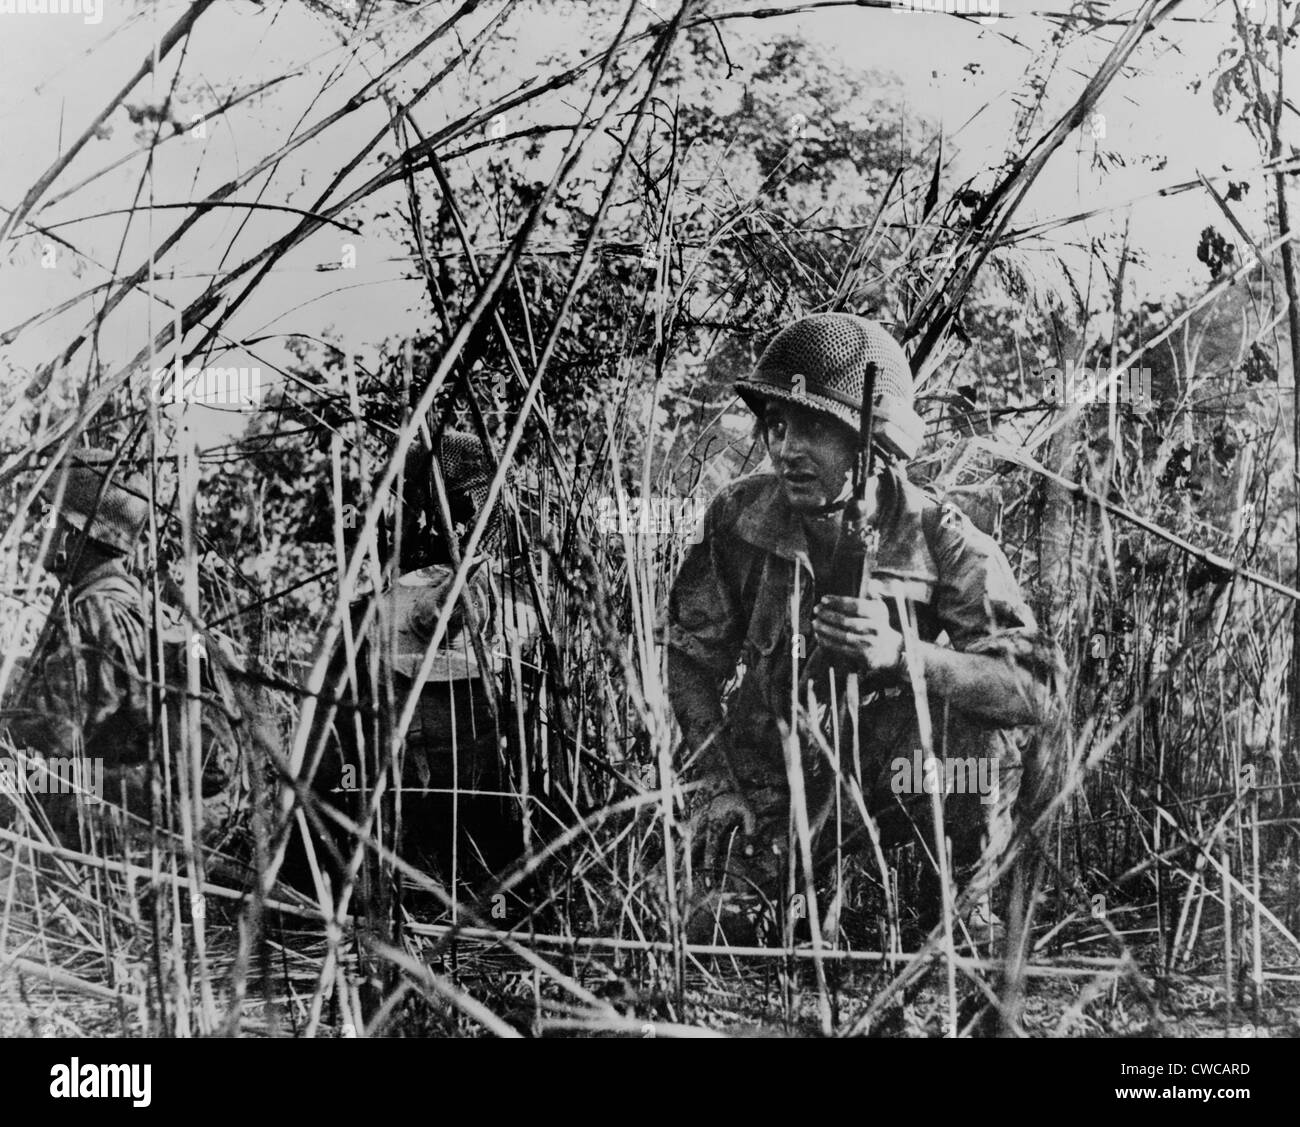 Légionnaires étrangers français au Vietnam. Des soldats français en patrouille accroupi dans l'extérieur thicket Dien Bien Phu, Vietnam. 1954. Banque D'Images